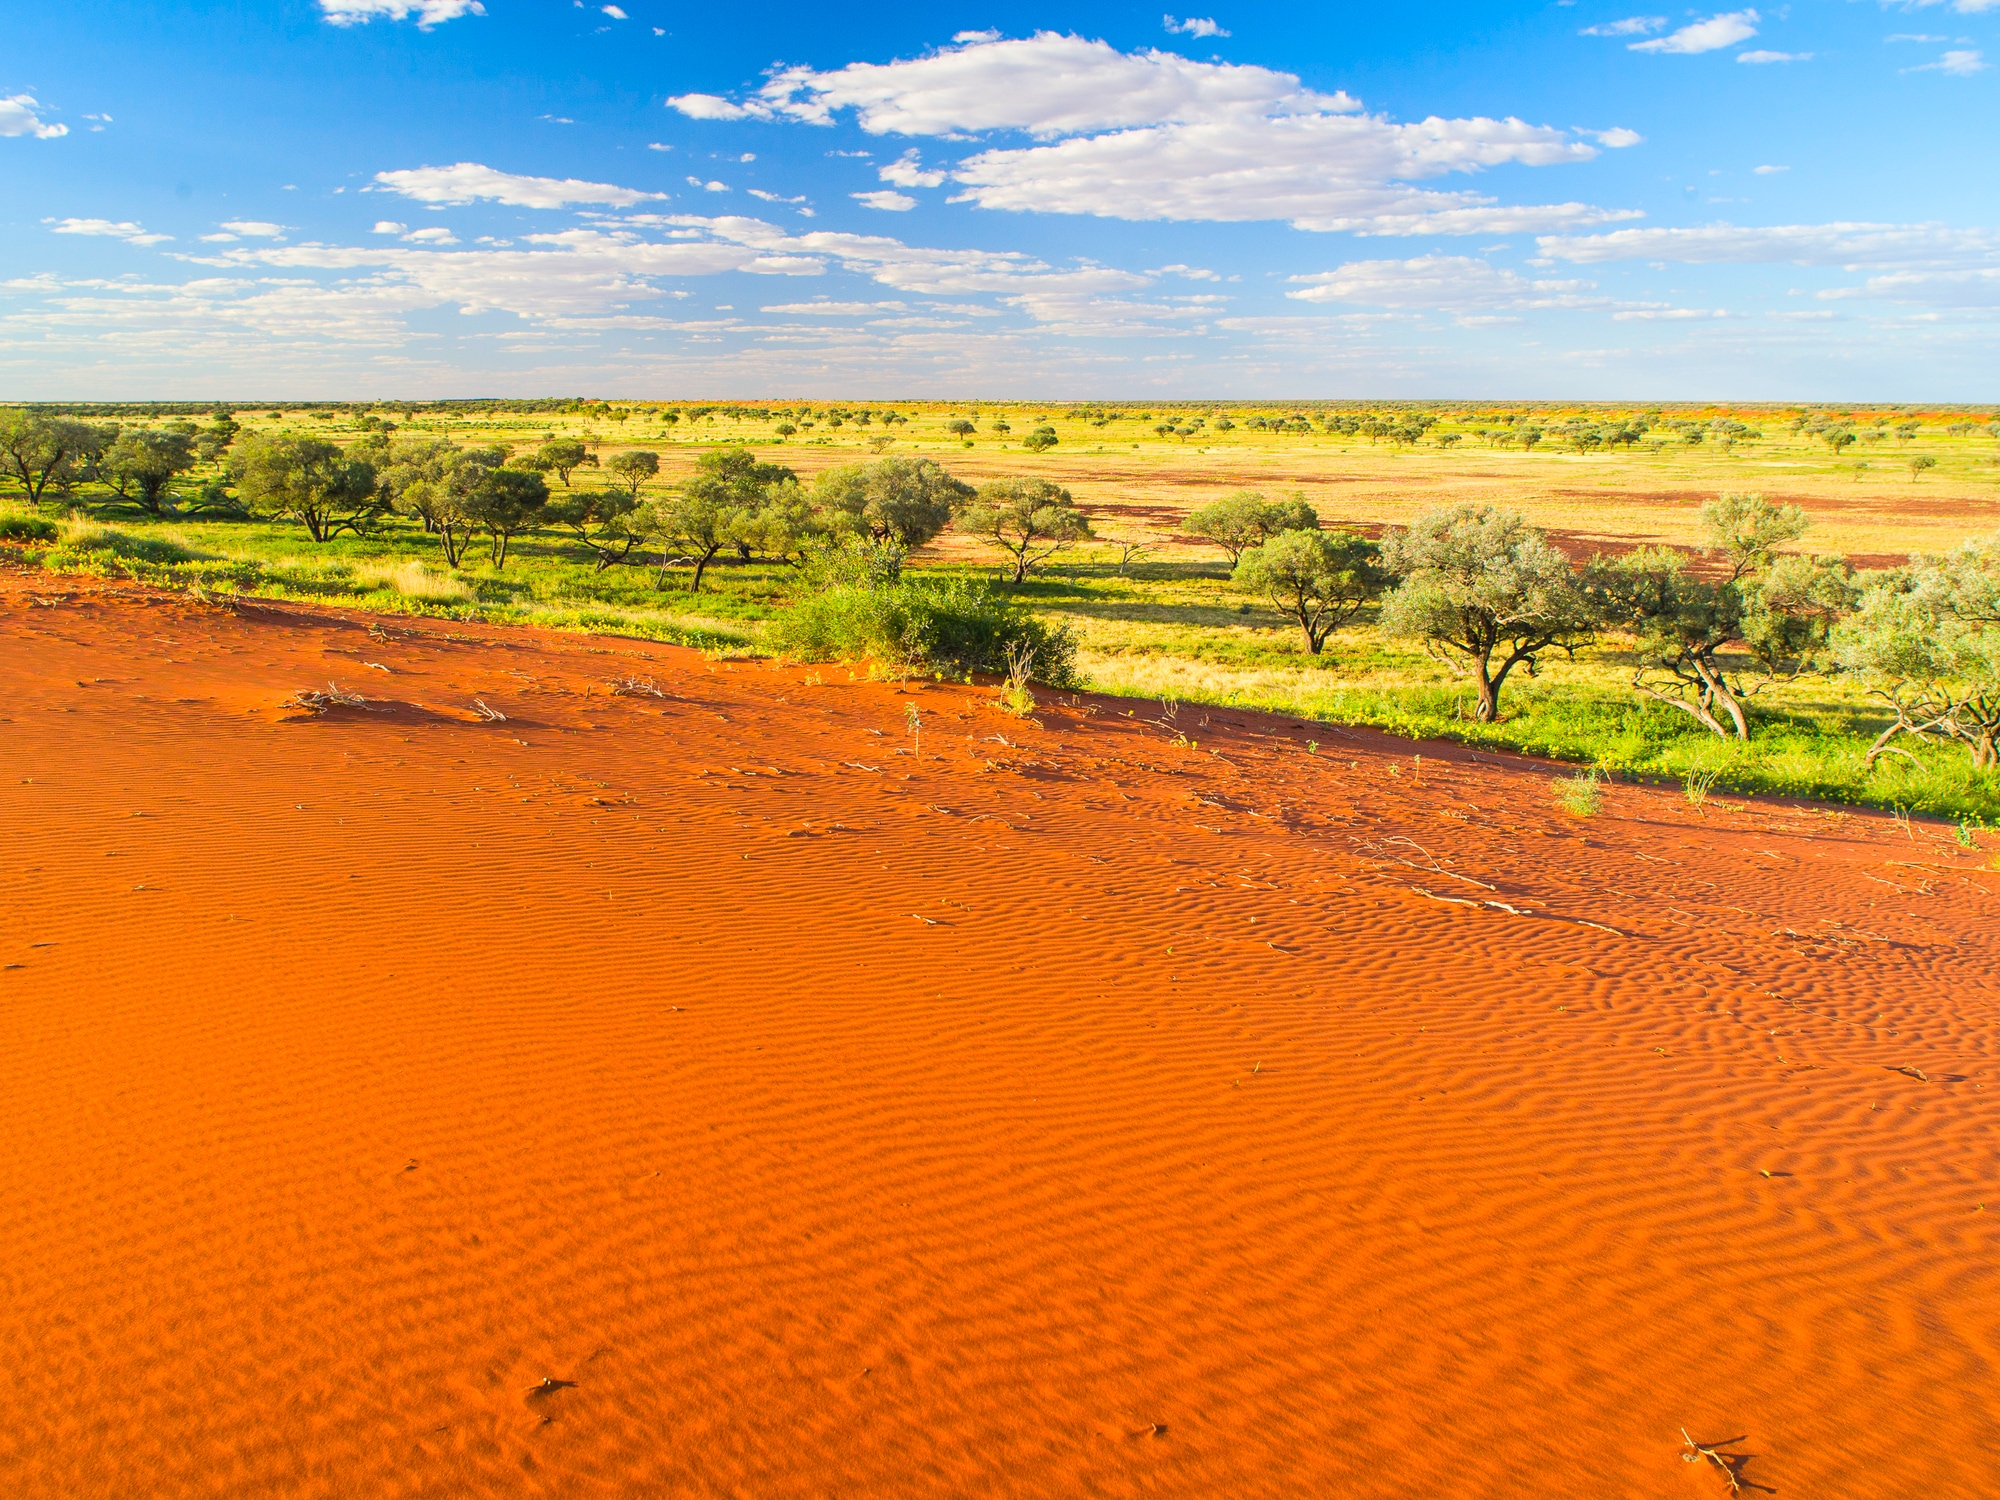 Roadtrip au cœur de l'Outback australien